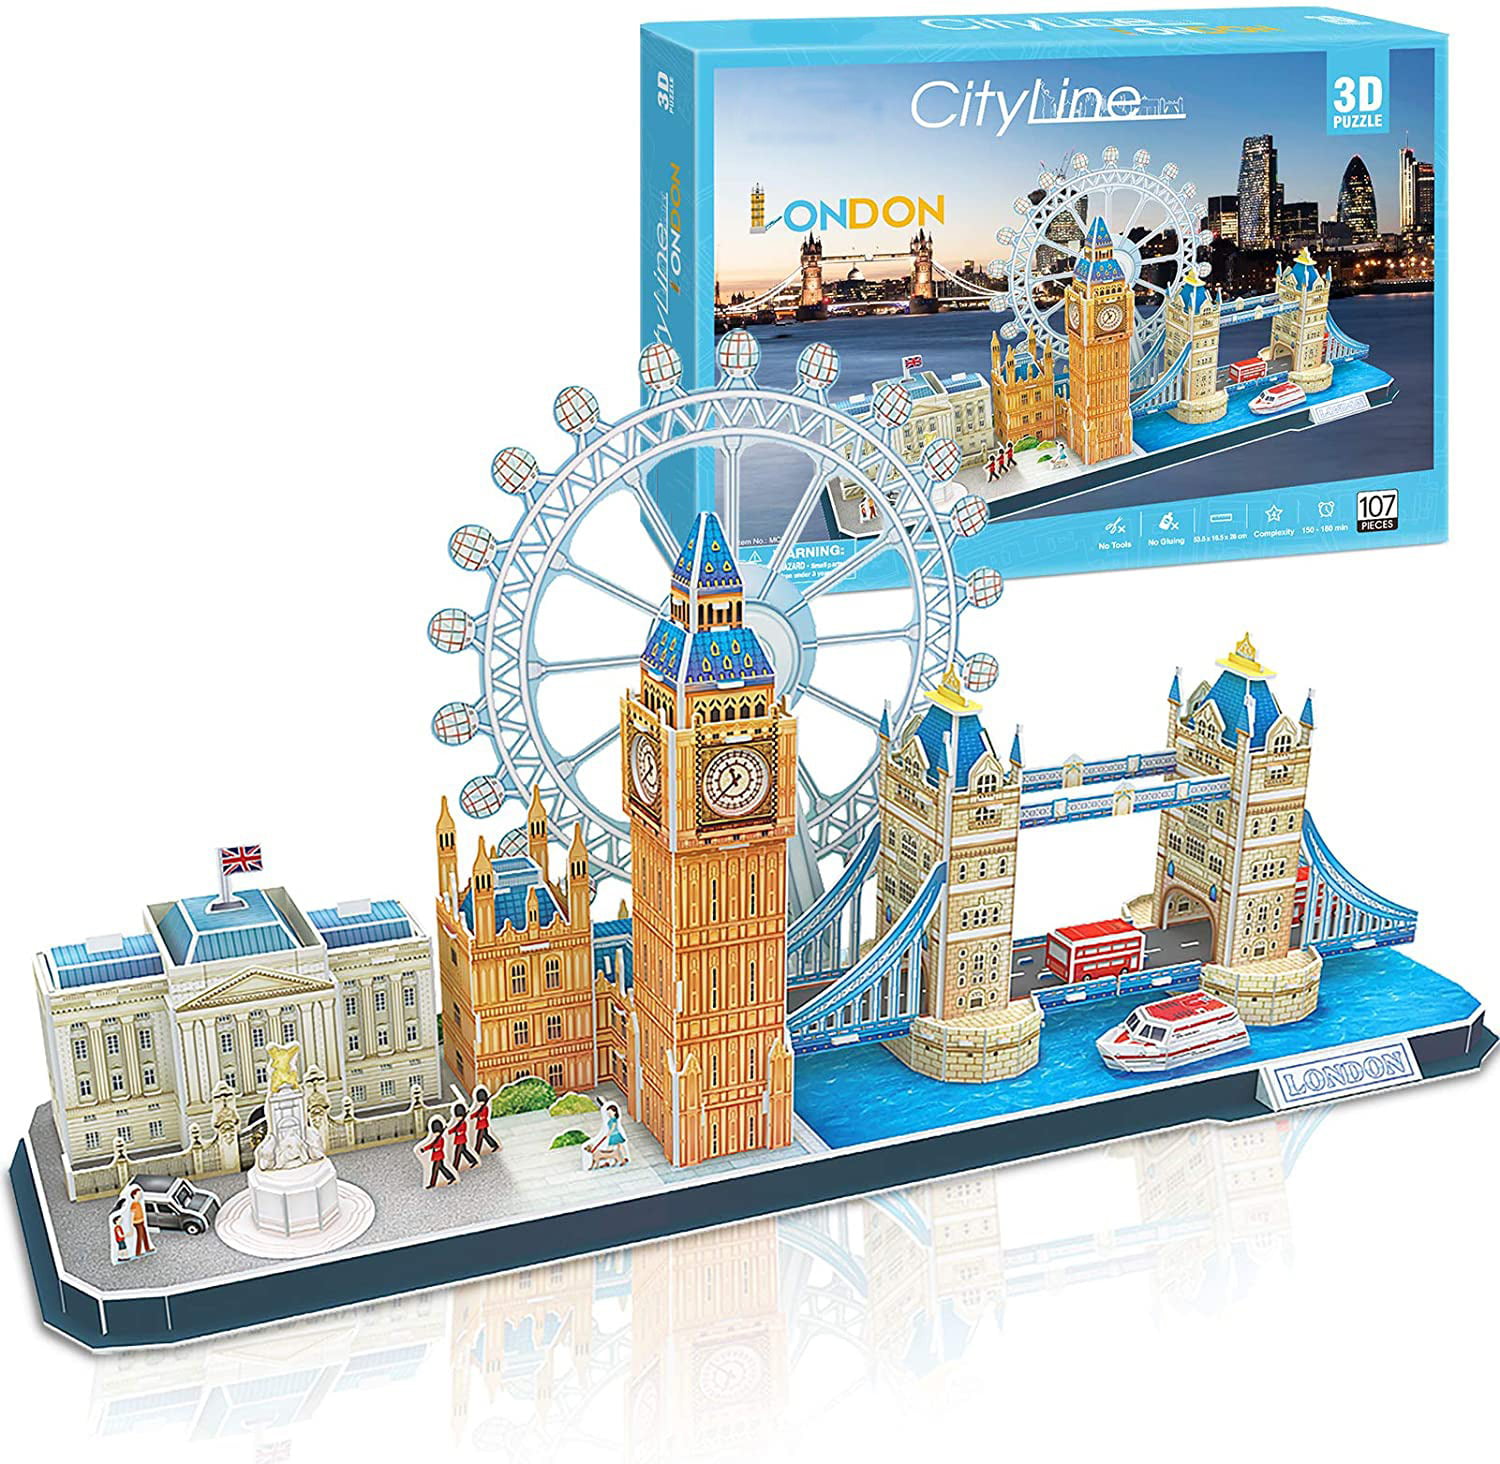 Tower Bridge Micro Blocks World Famous Architectural 3D Puzzle Educational STEM 